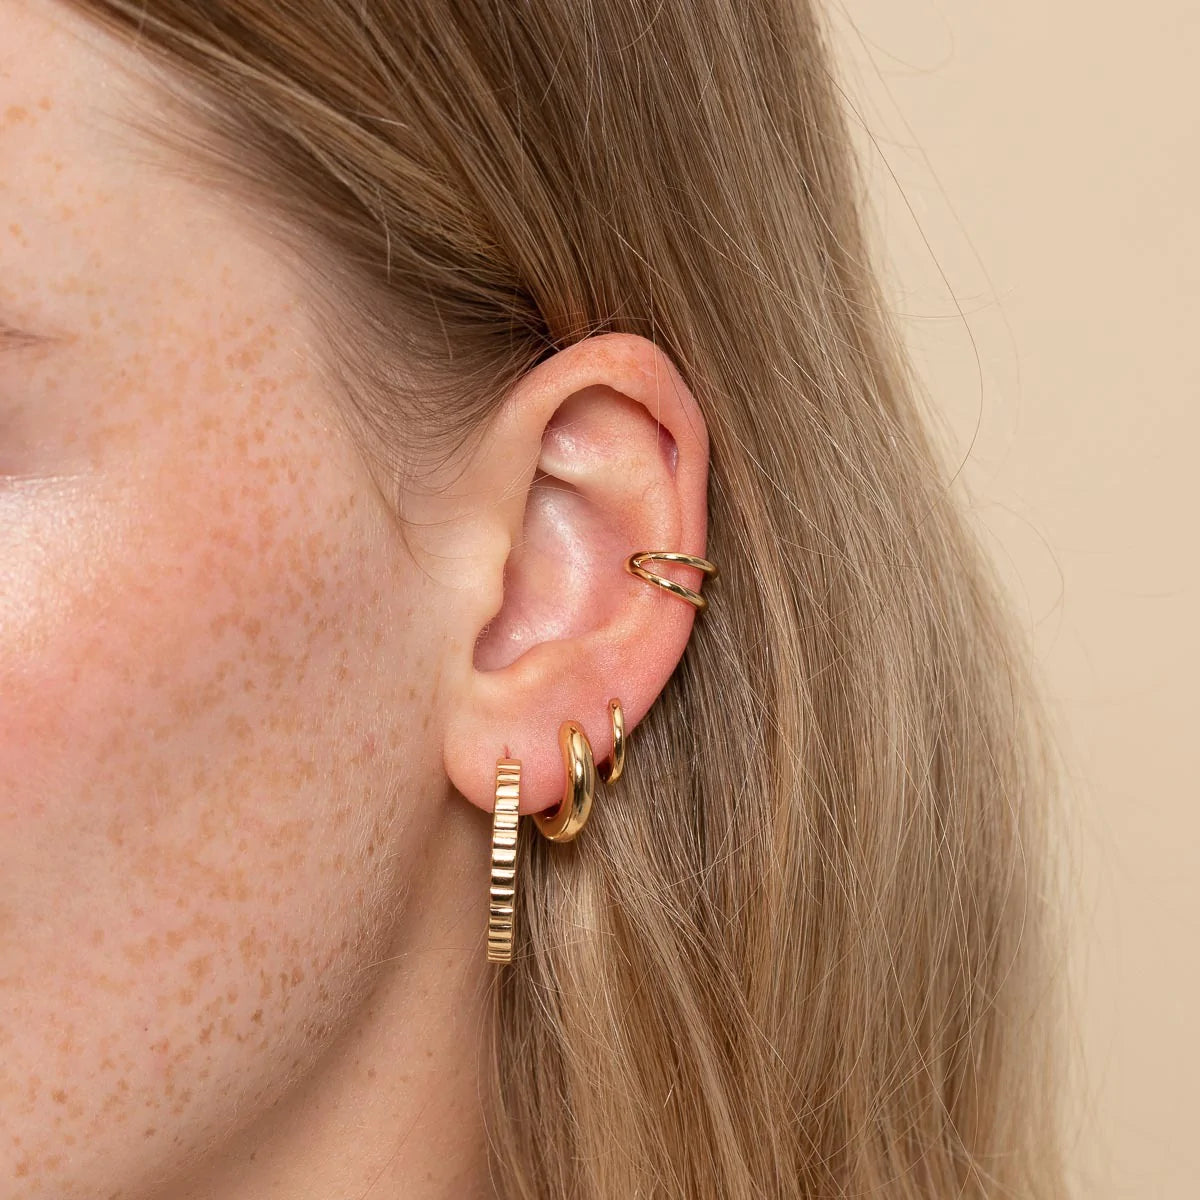 Illusion Essential Ear Cuff in Gold worn